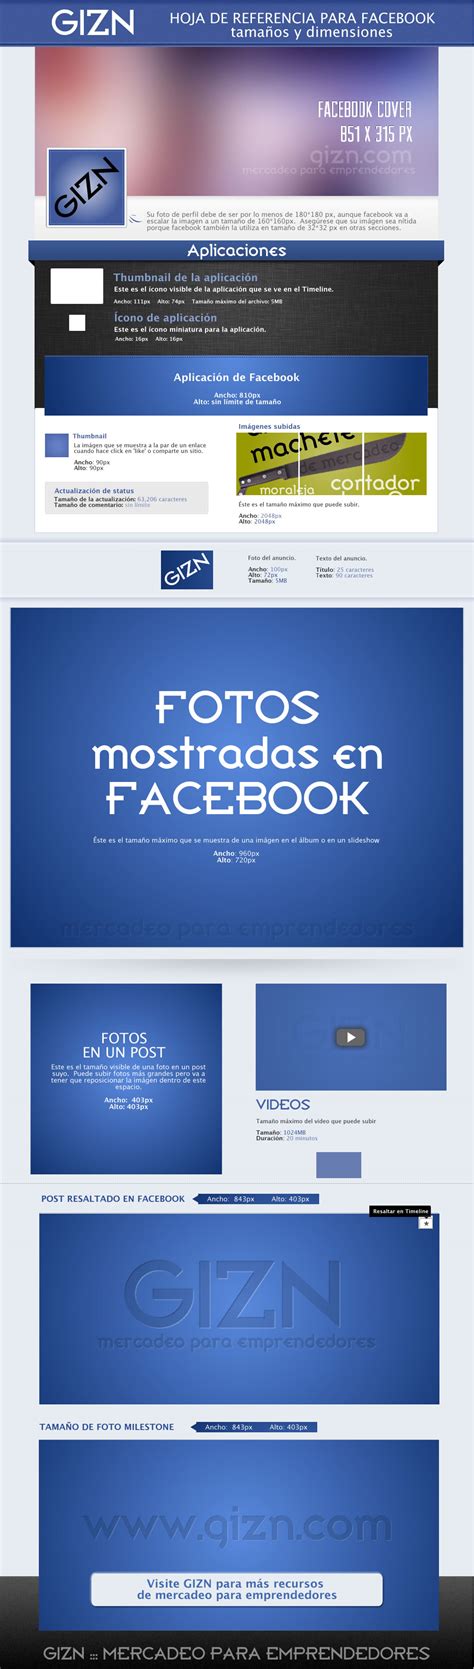 Fotos para Facebook   tamaños y dimensiones :: GIZN